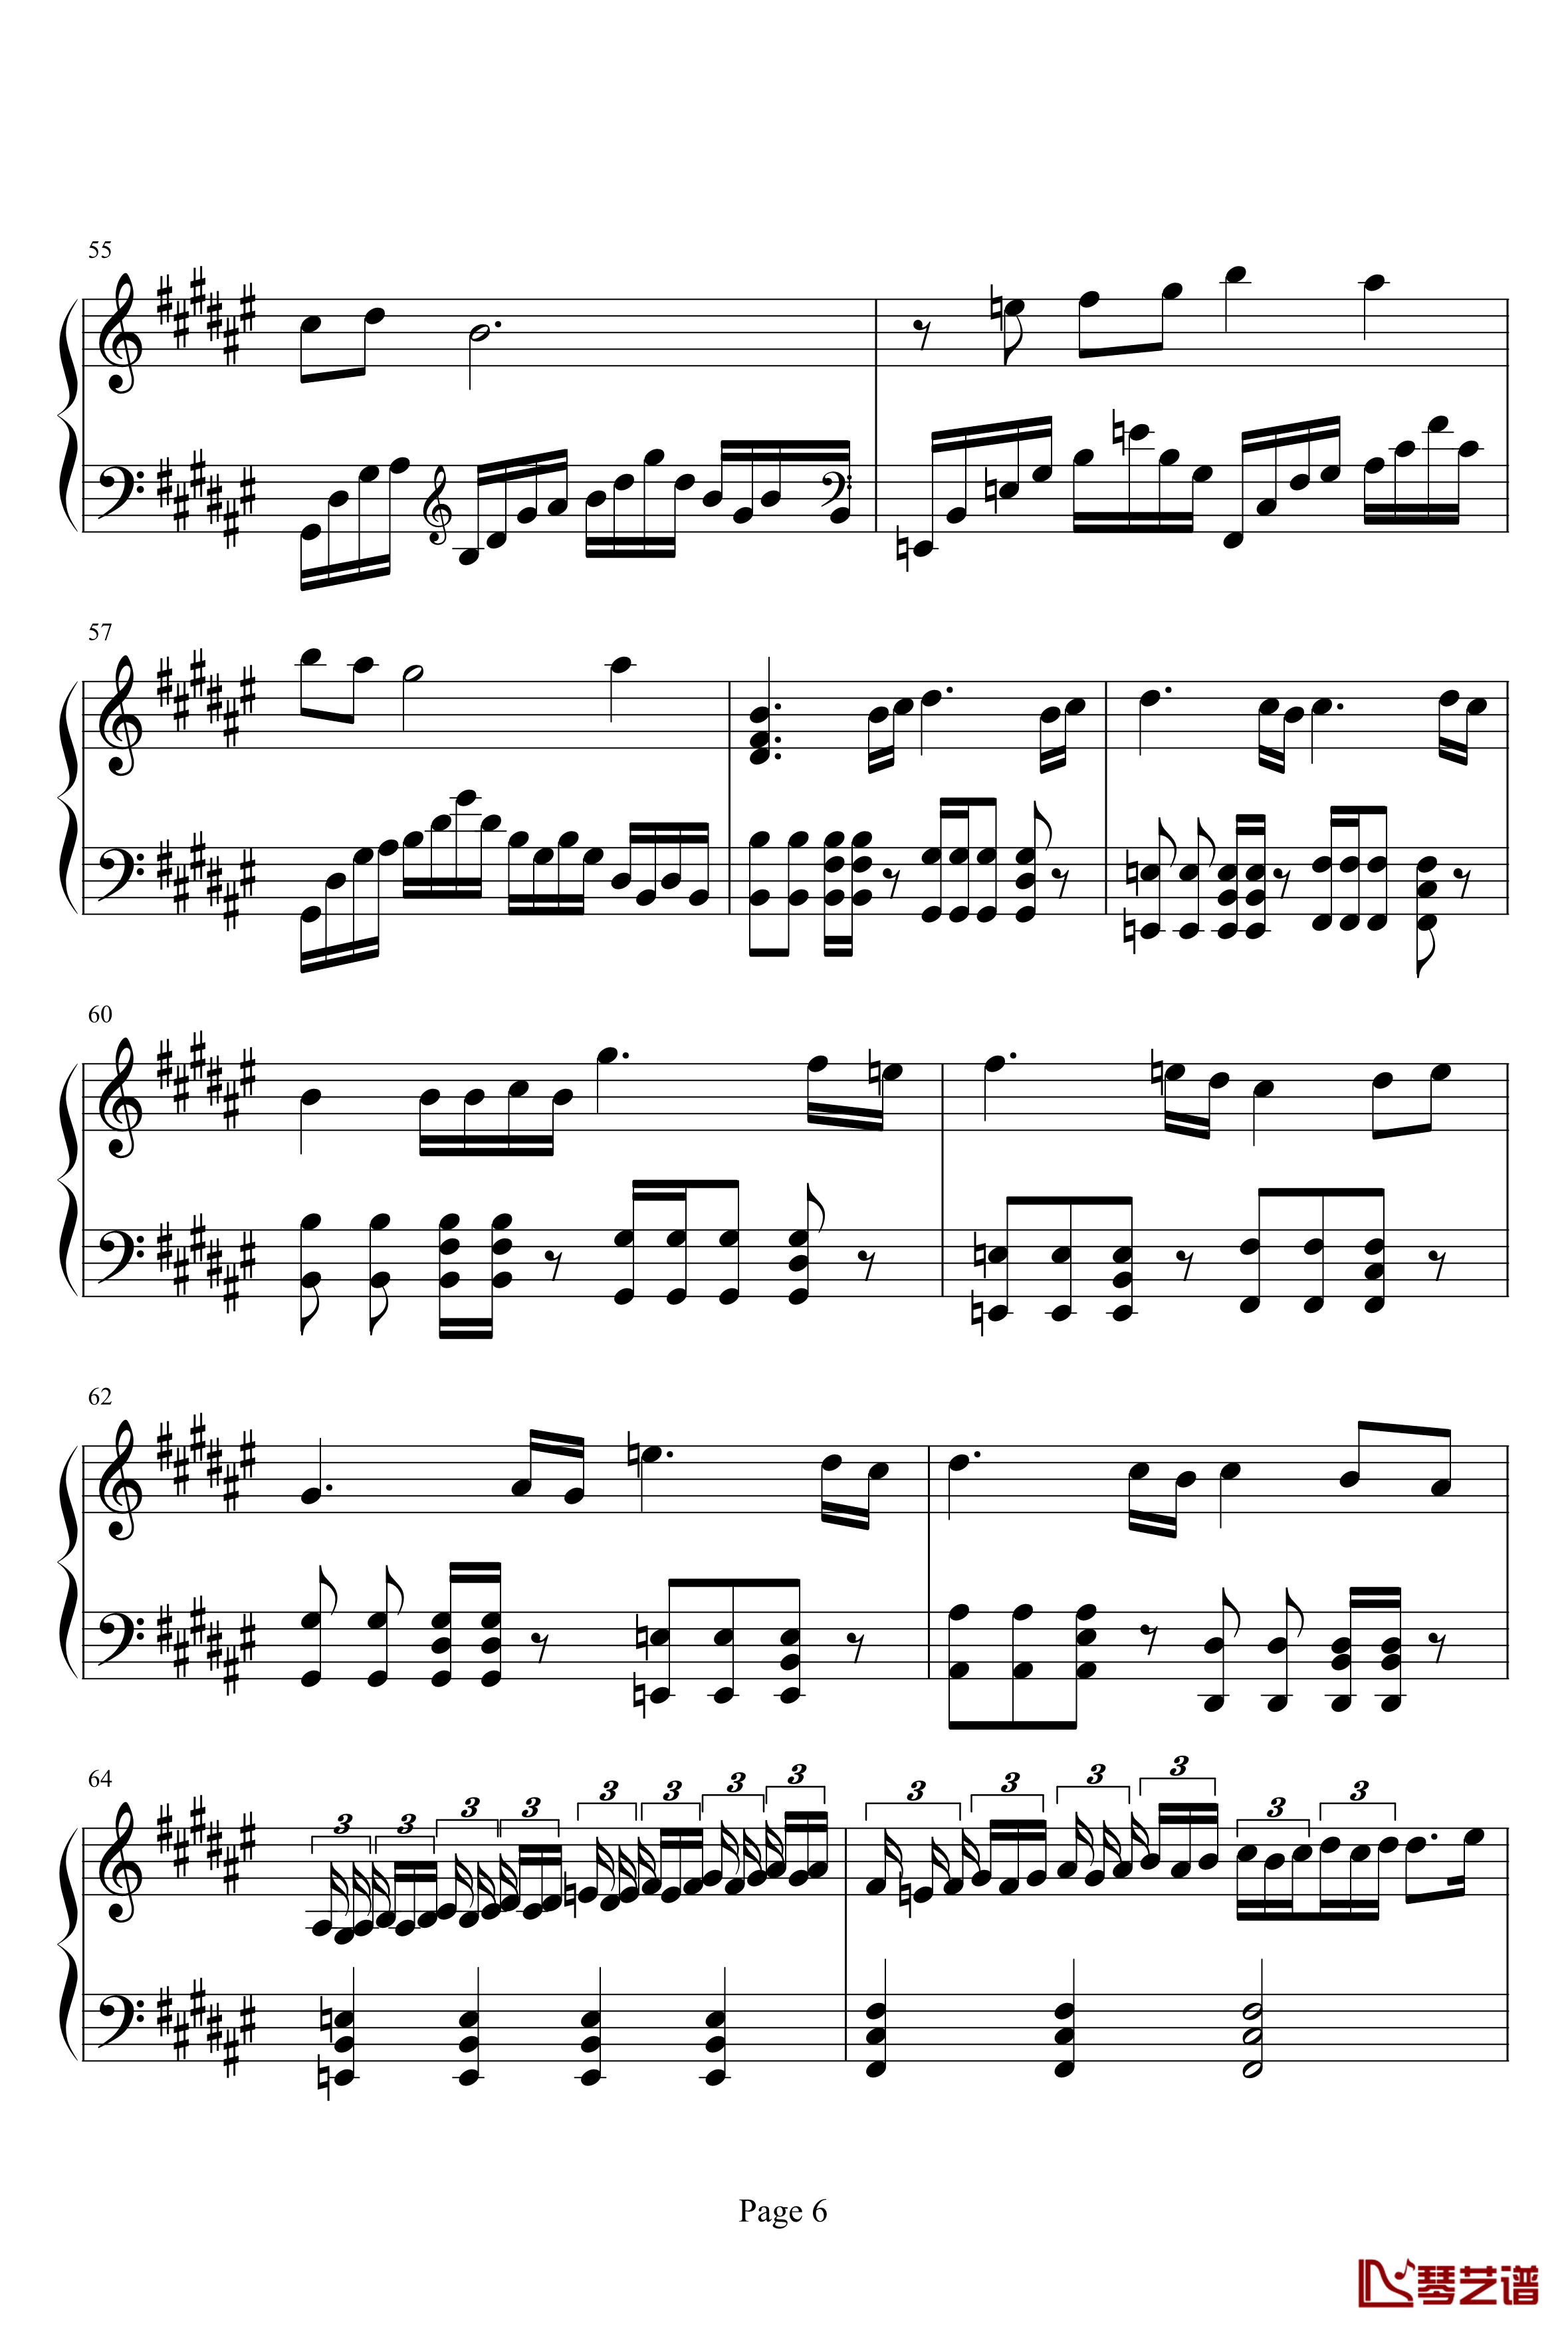 亡灵序曲钢琴谱-完整版-亡灵序曲6